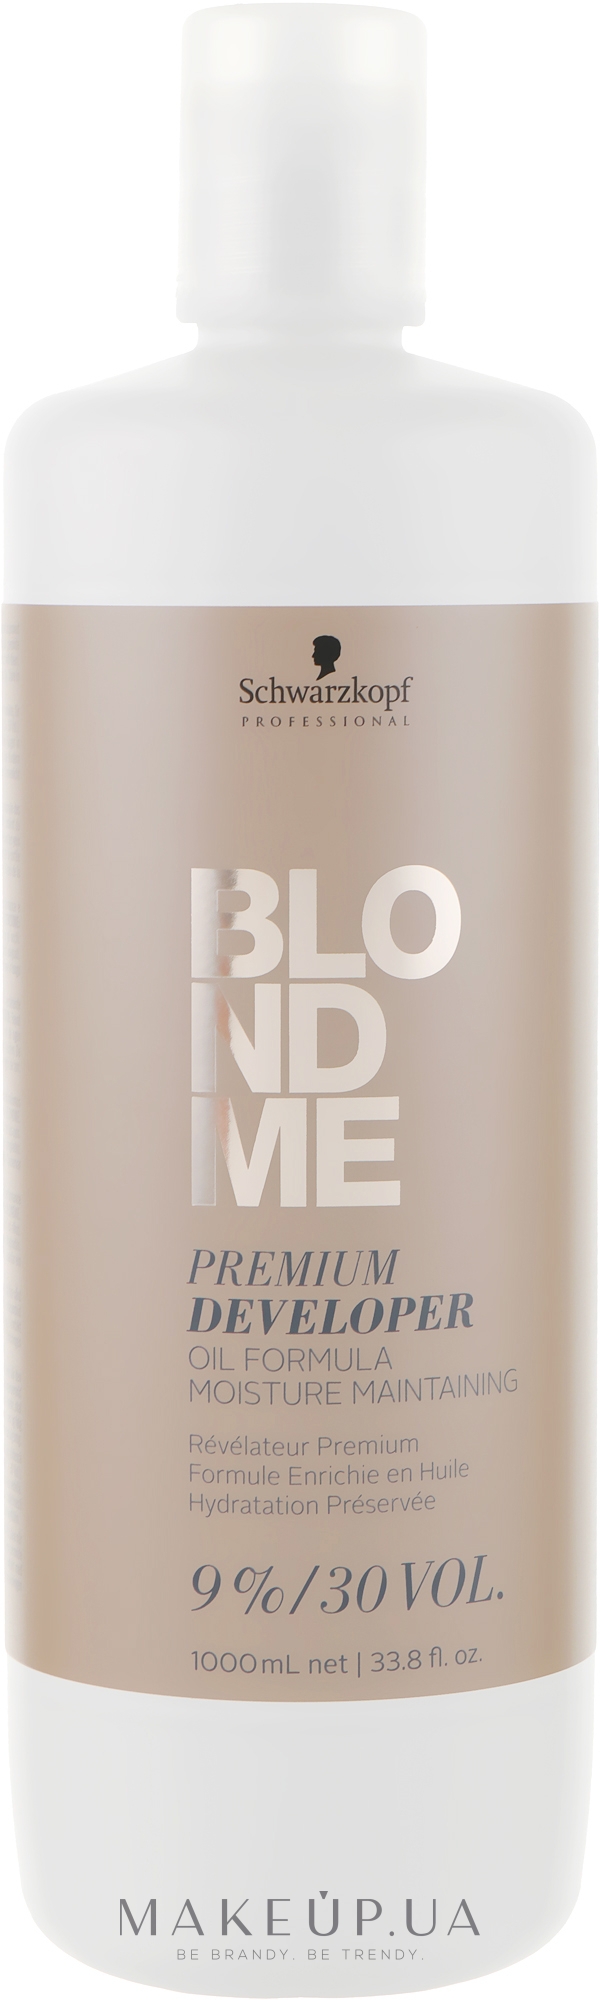 Преміум-окислювач 9%, 30 Vol. - Schwarzkopf Professional Blondme Premium Developer 9% — фото 1000ml